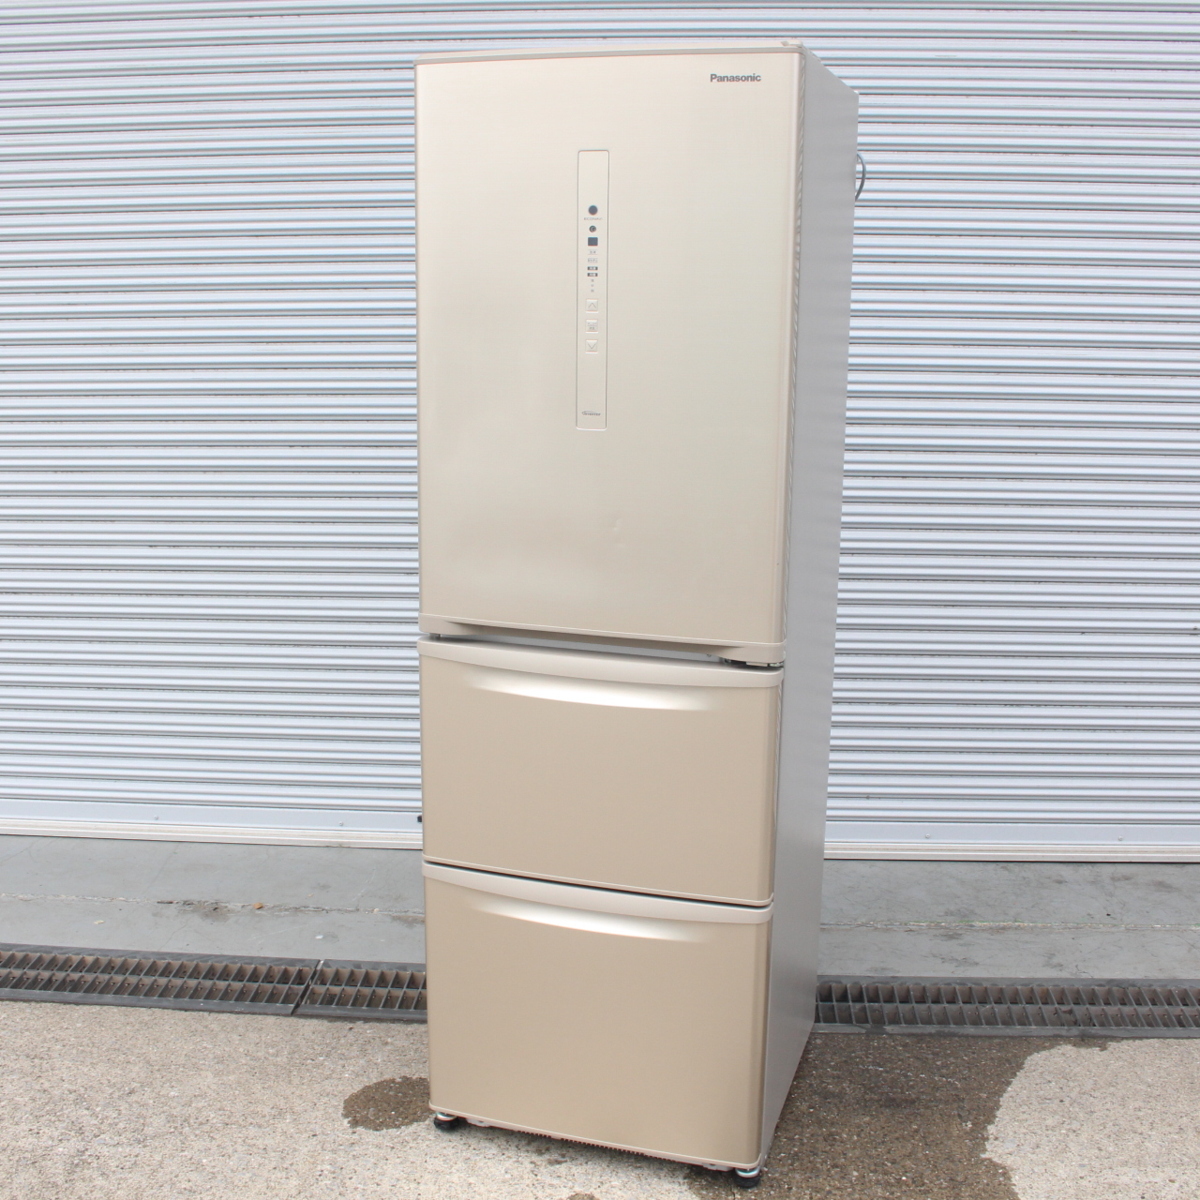 横浜市中区にて パナソニック 冷蔵庫 NR-C370C-N 2019年製 を出張買取させて頂きました。